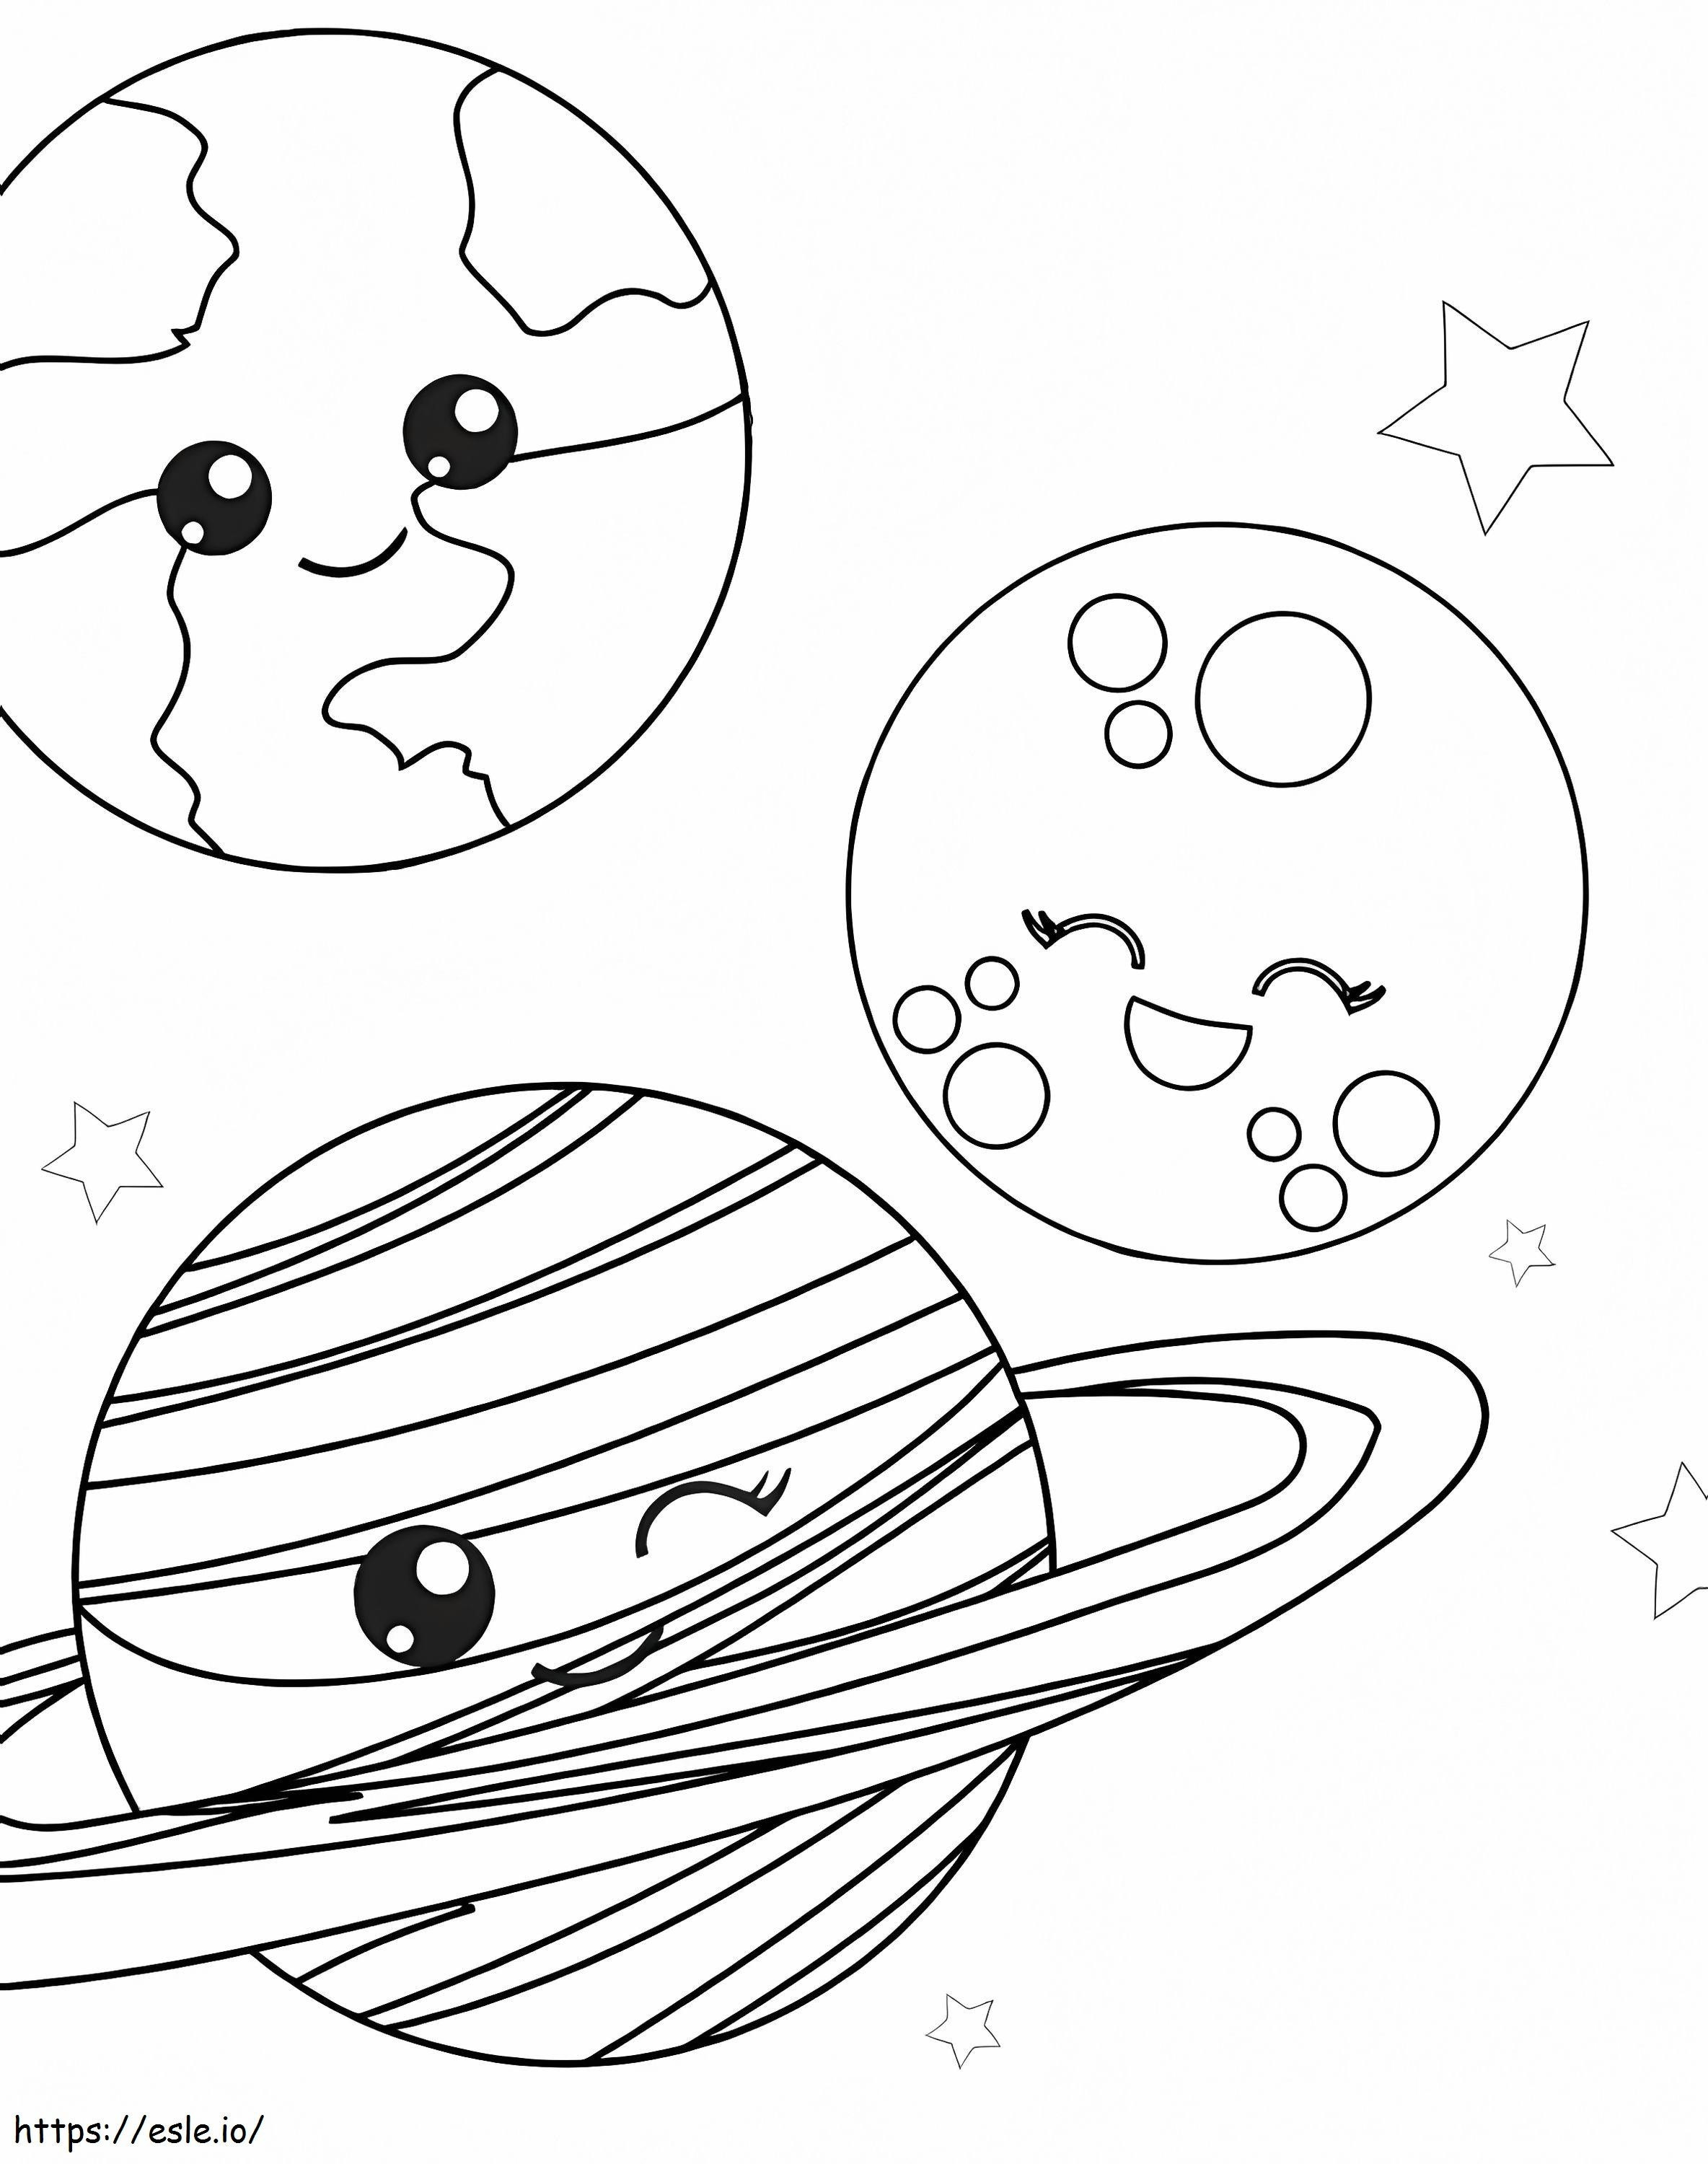 Três planetas sorrindo no espaço para colorir